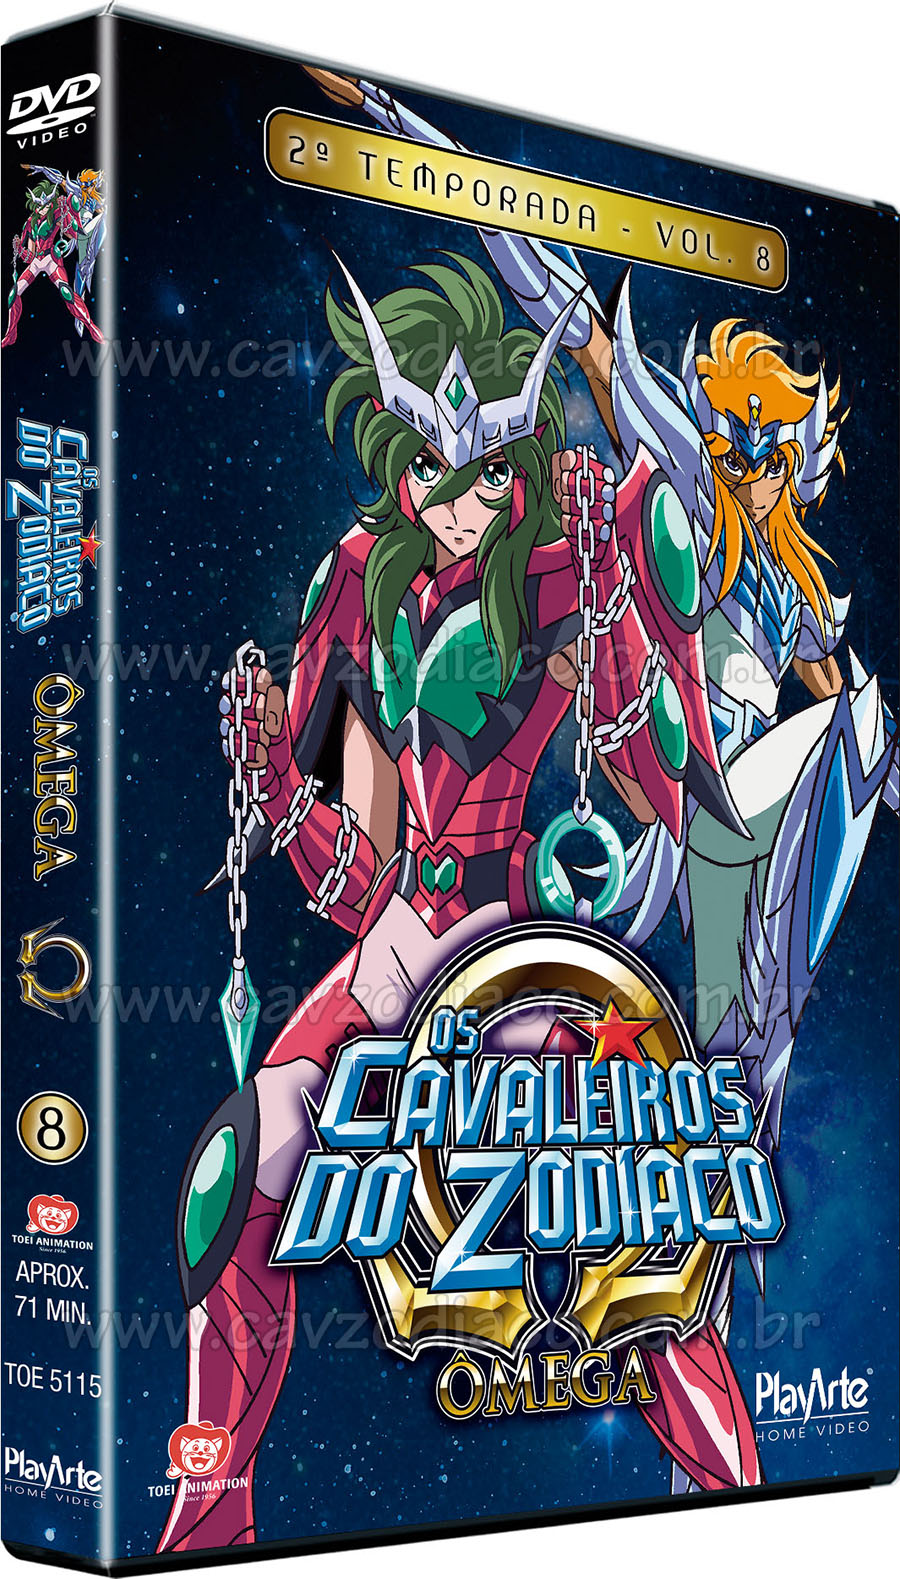 Dvd - Os Cavaleiros Do Zodíaco - Ômega Vol. 13